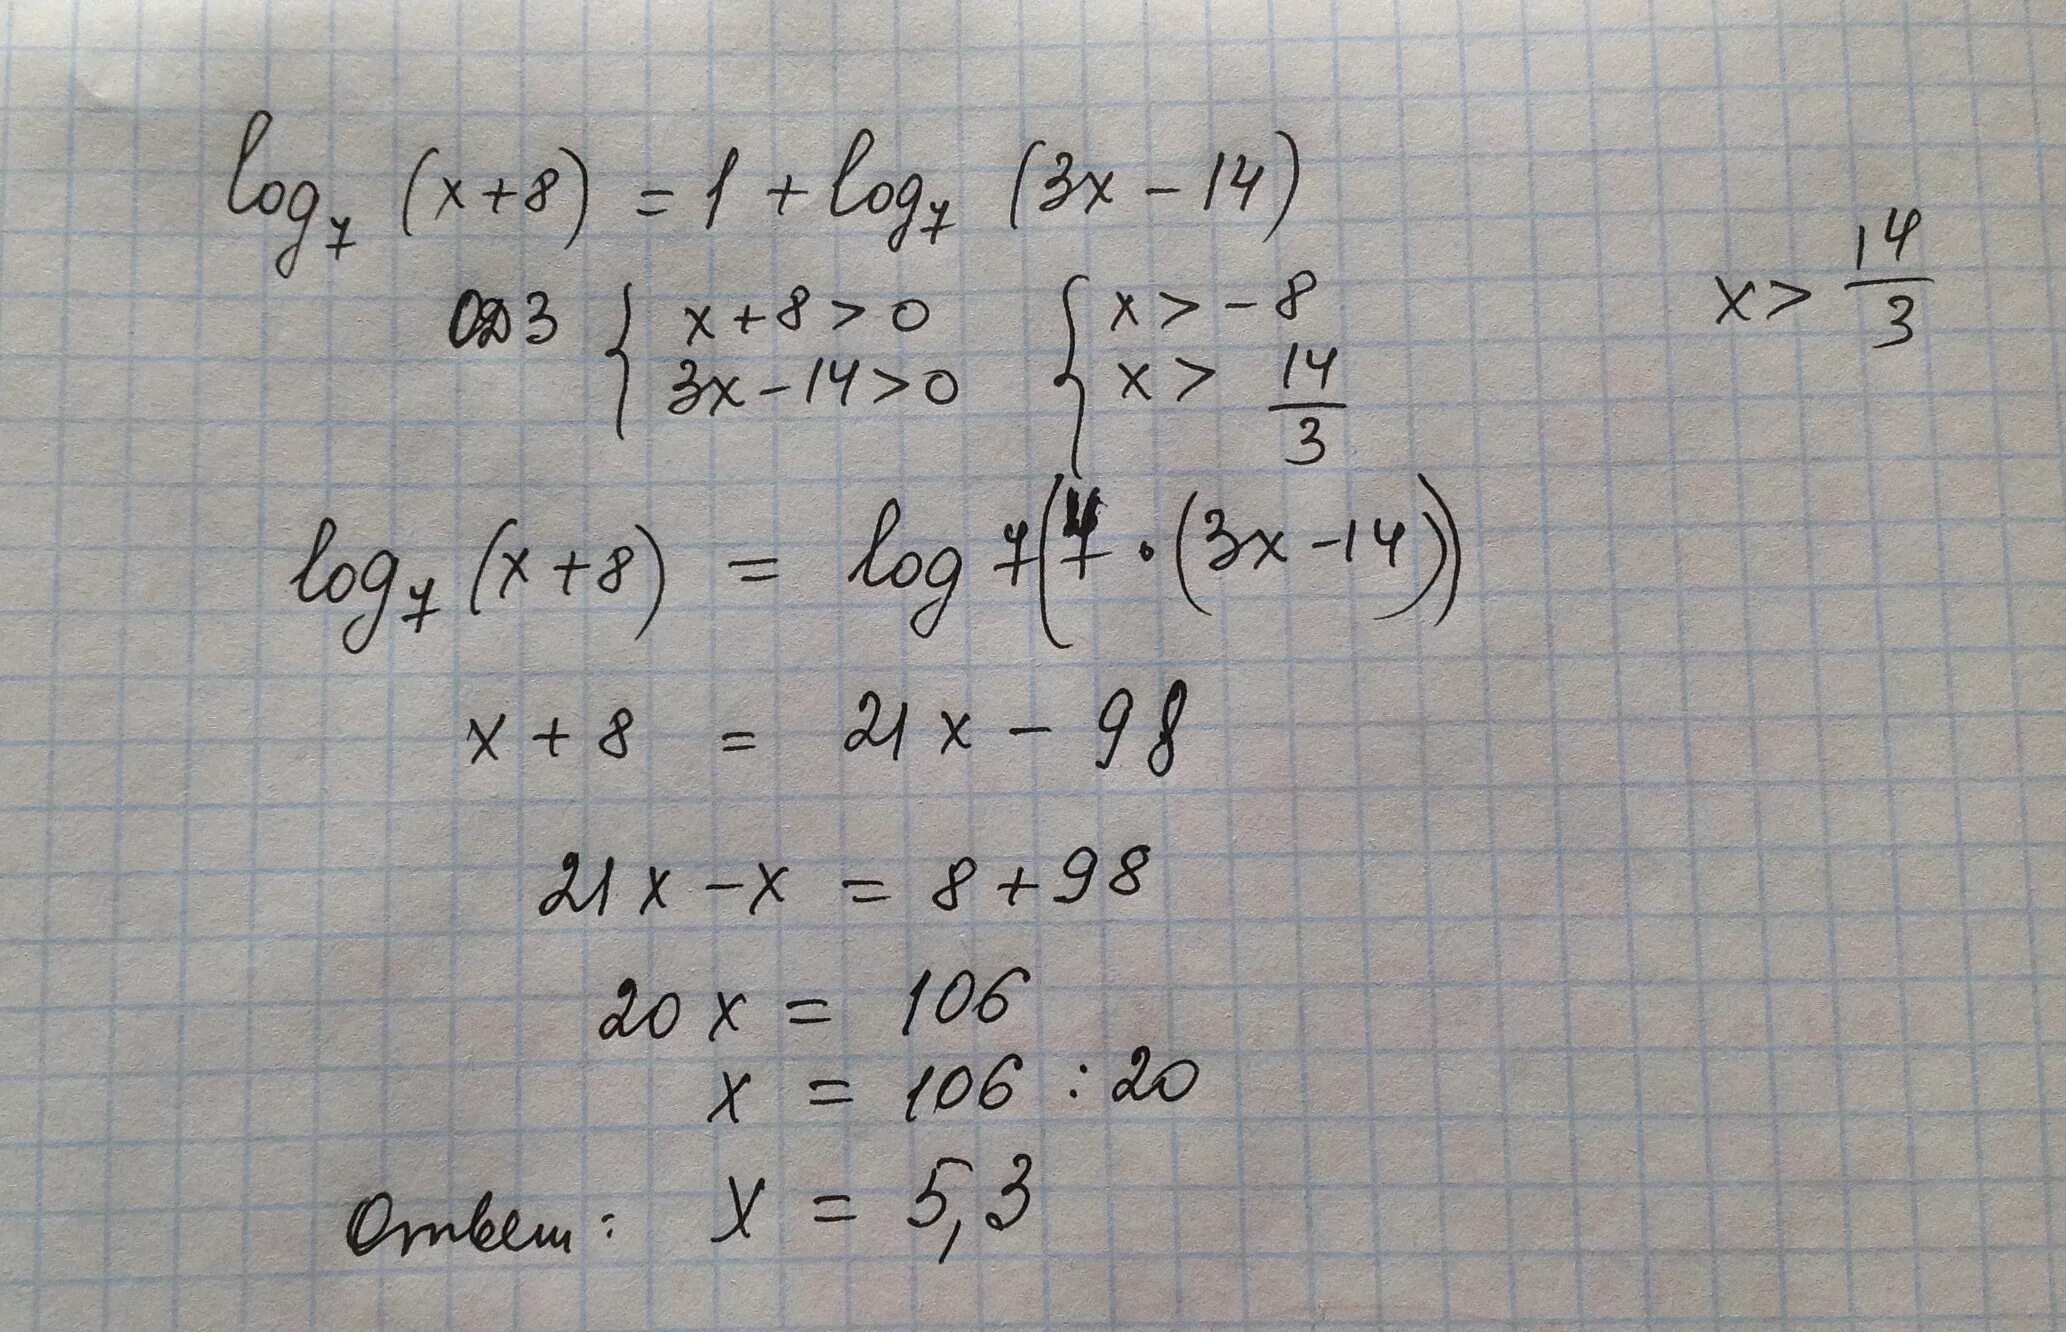 Log3(x-7)<3. Log2(7-х)=2log8 3. Log3(x+3x-7)=1. 7/X+8 -1. 8x 7 3x 1 0